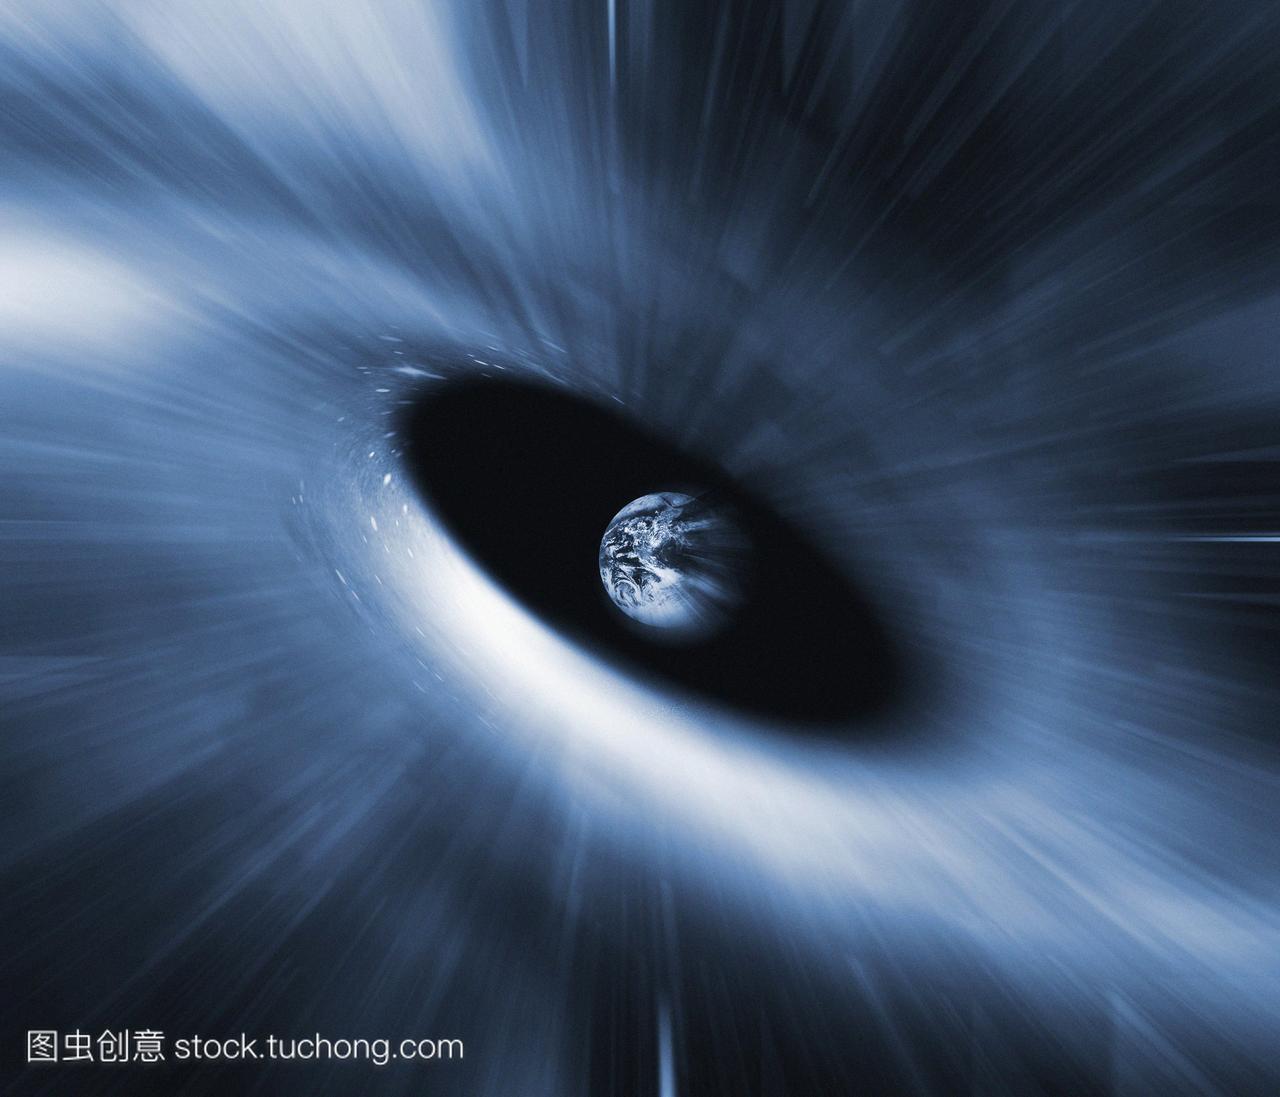 黑洞吞噬地球,电脑艺术。黑洞是一个空间的区